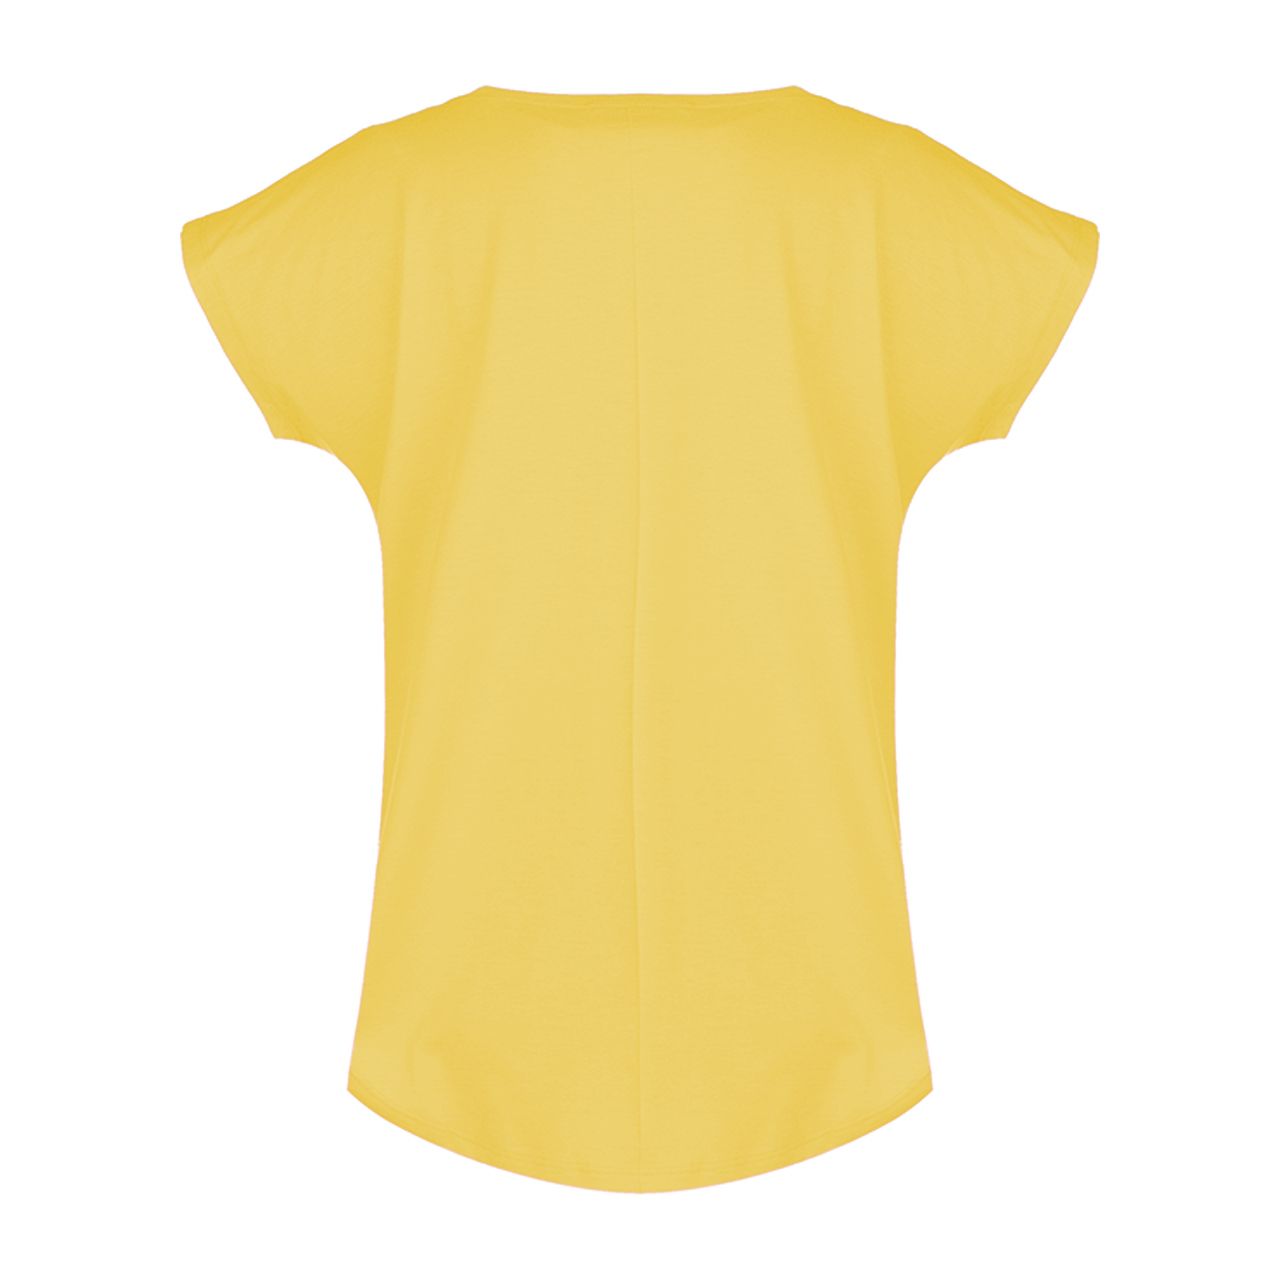  تی شرت زنانه افراتین طرح ماه و خورشید کد 2548 رنگ زرد -  - 3